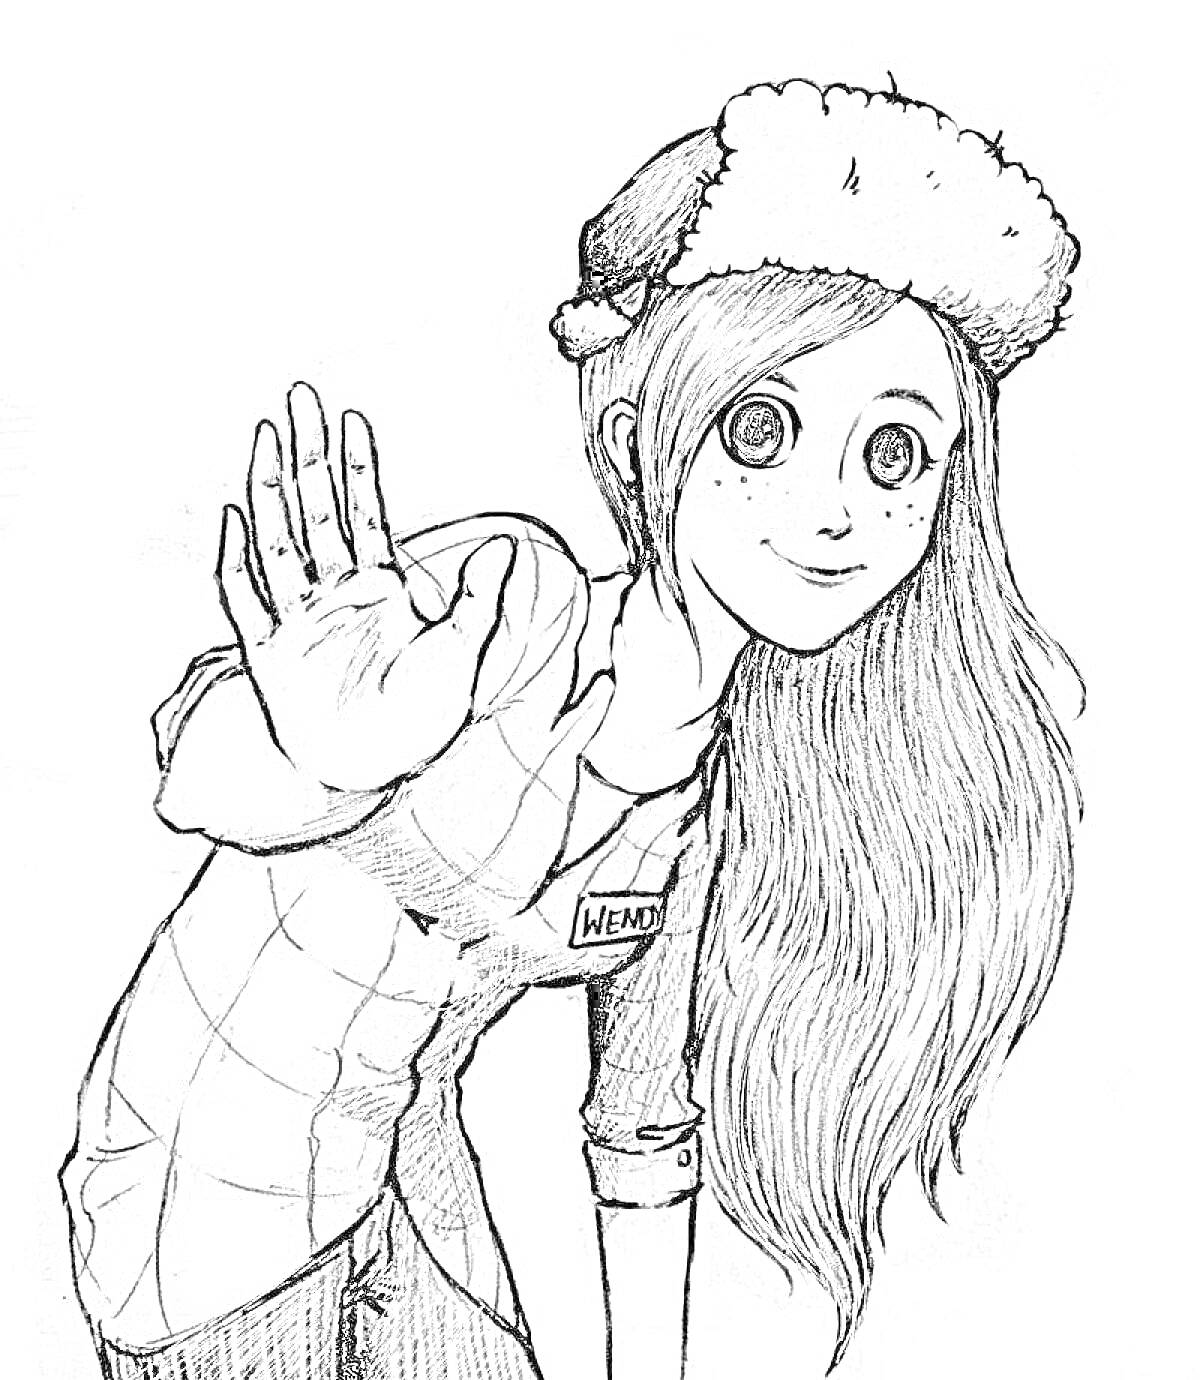 Девушка с длинными волосами в клетчатой рубашке и шапке с мехом приветствует